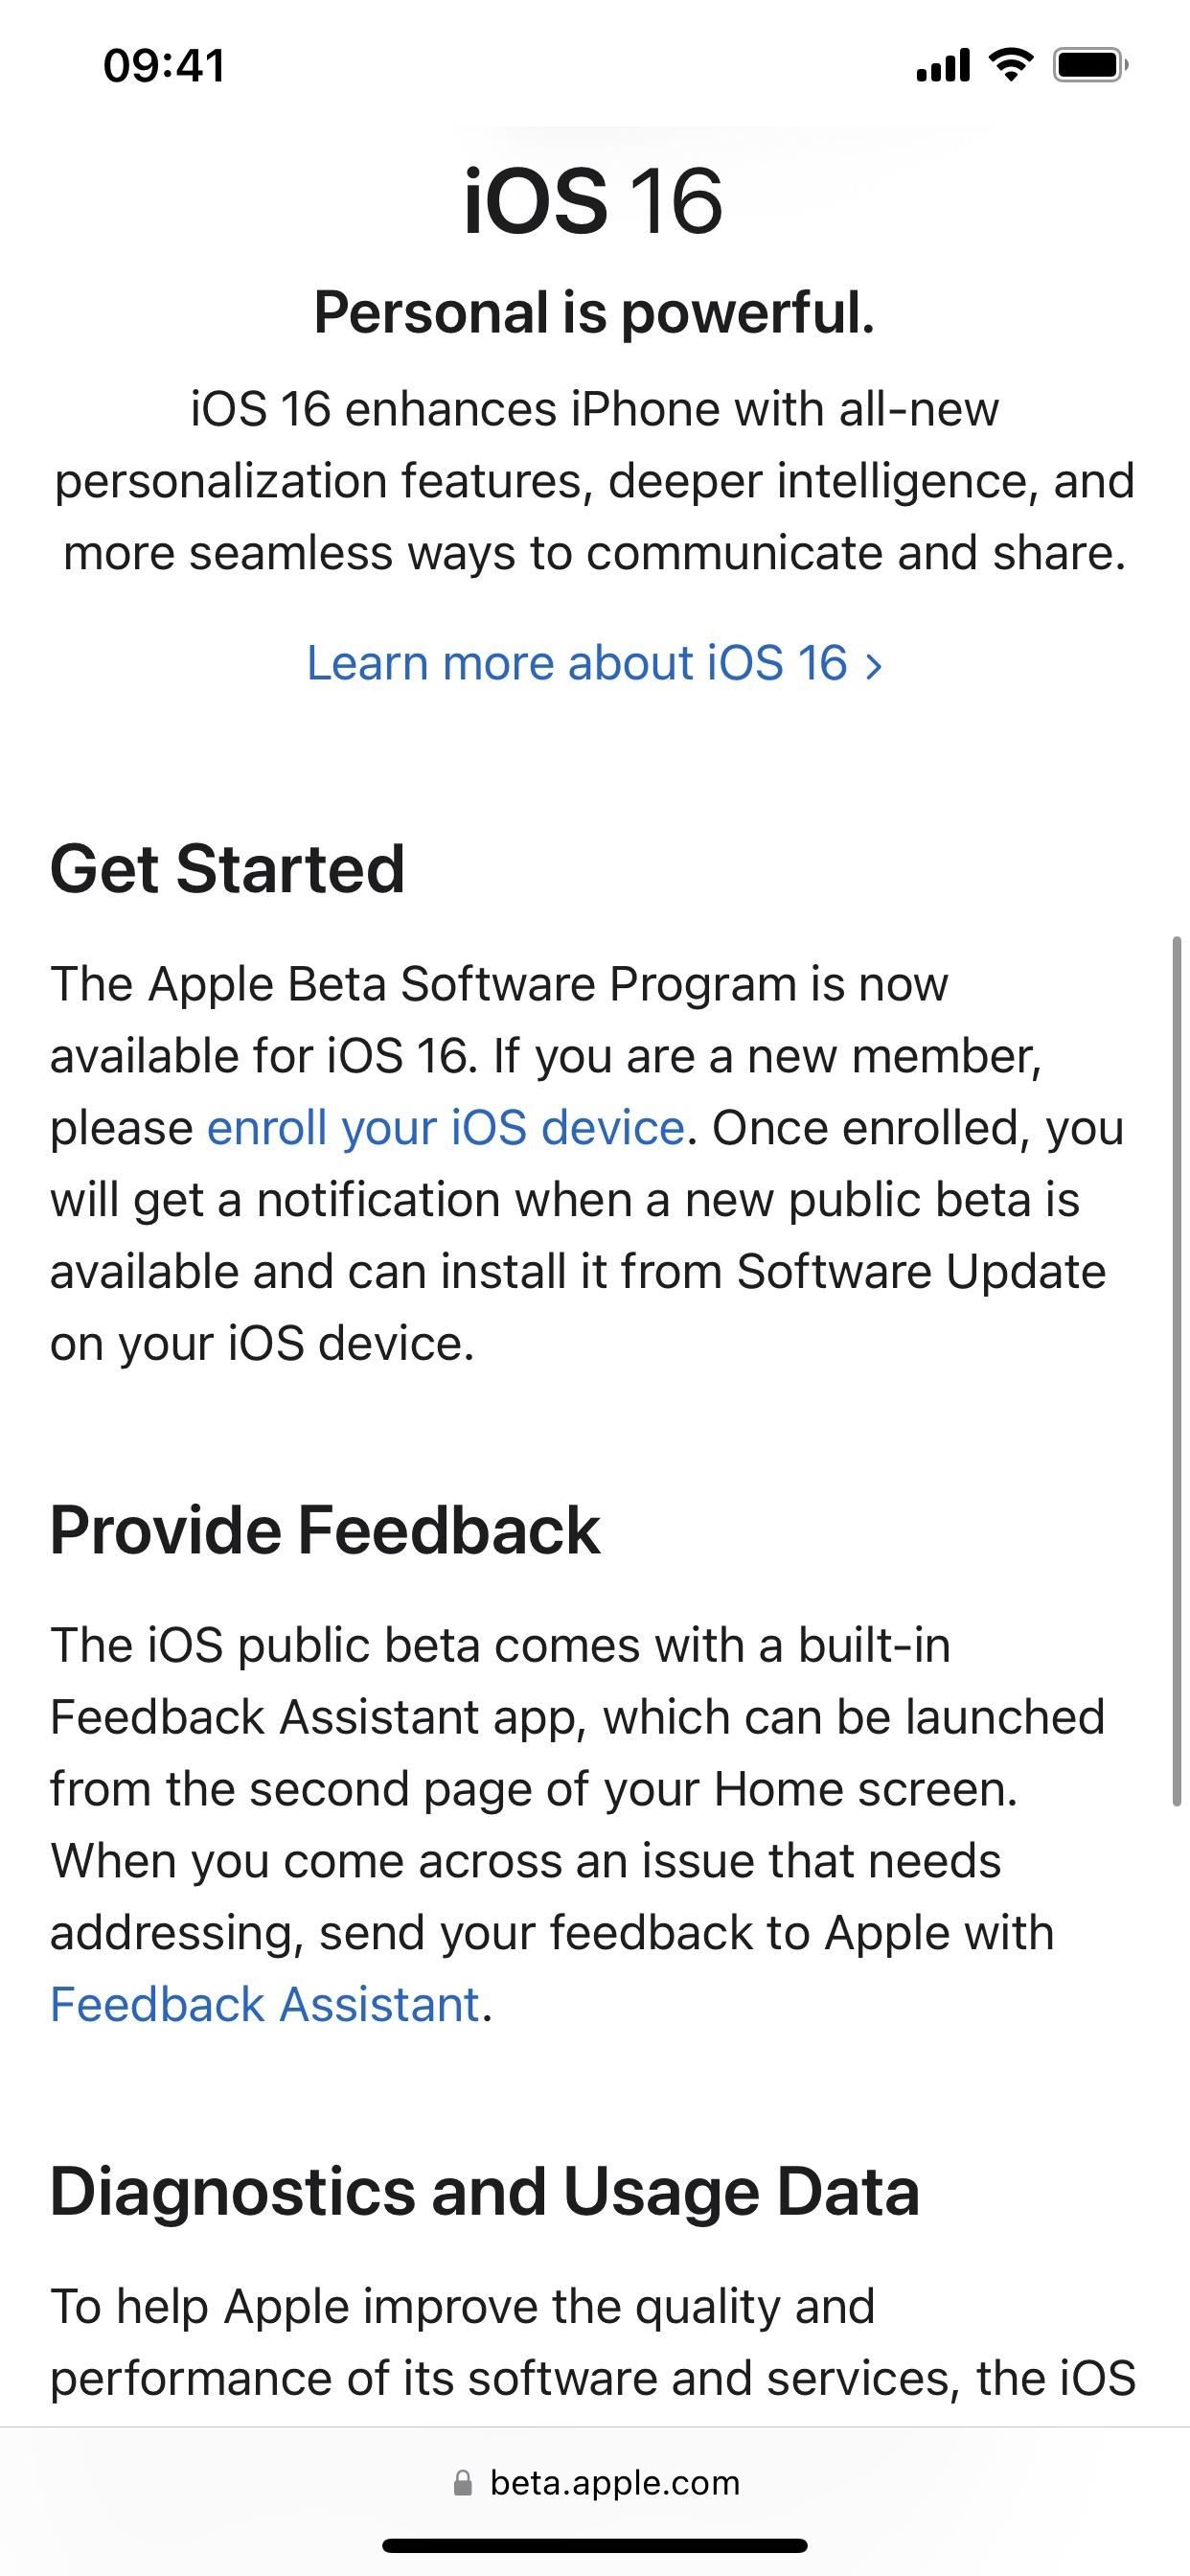 So laden Sie iOS 16.4 herunter und installieren es auf Ihrem iPhone, um neue Funktionen zuerst auszuprobieren